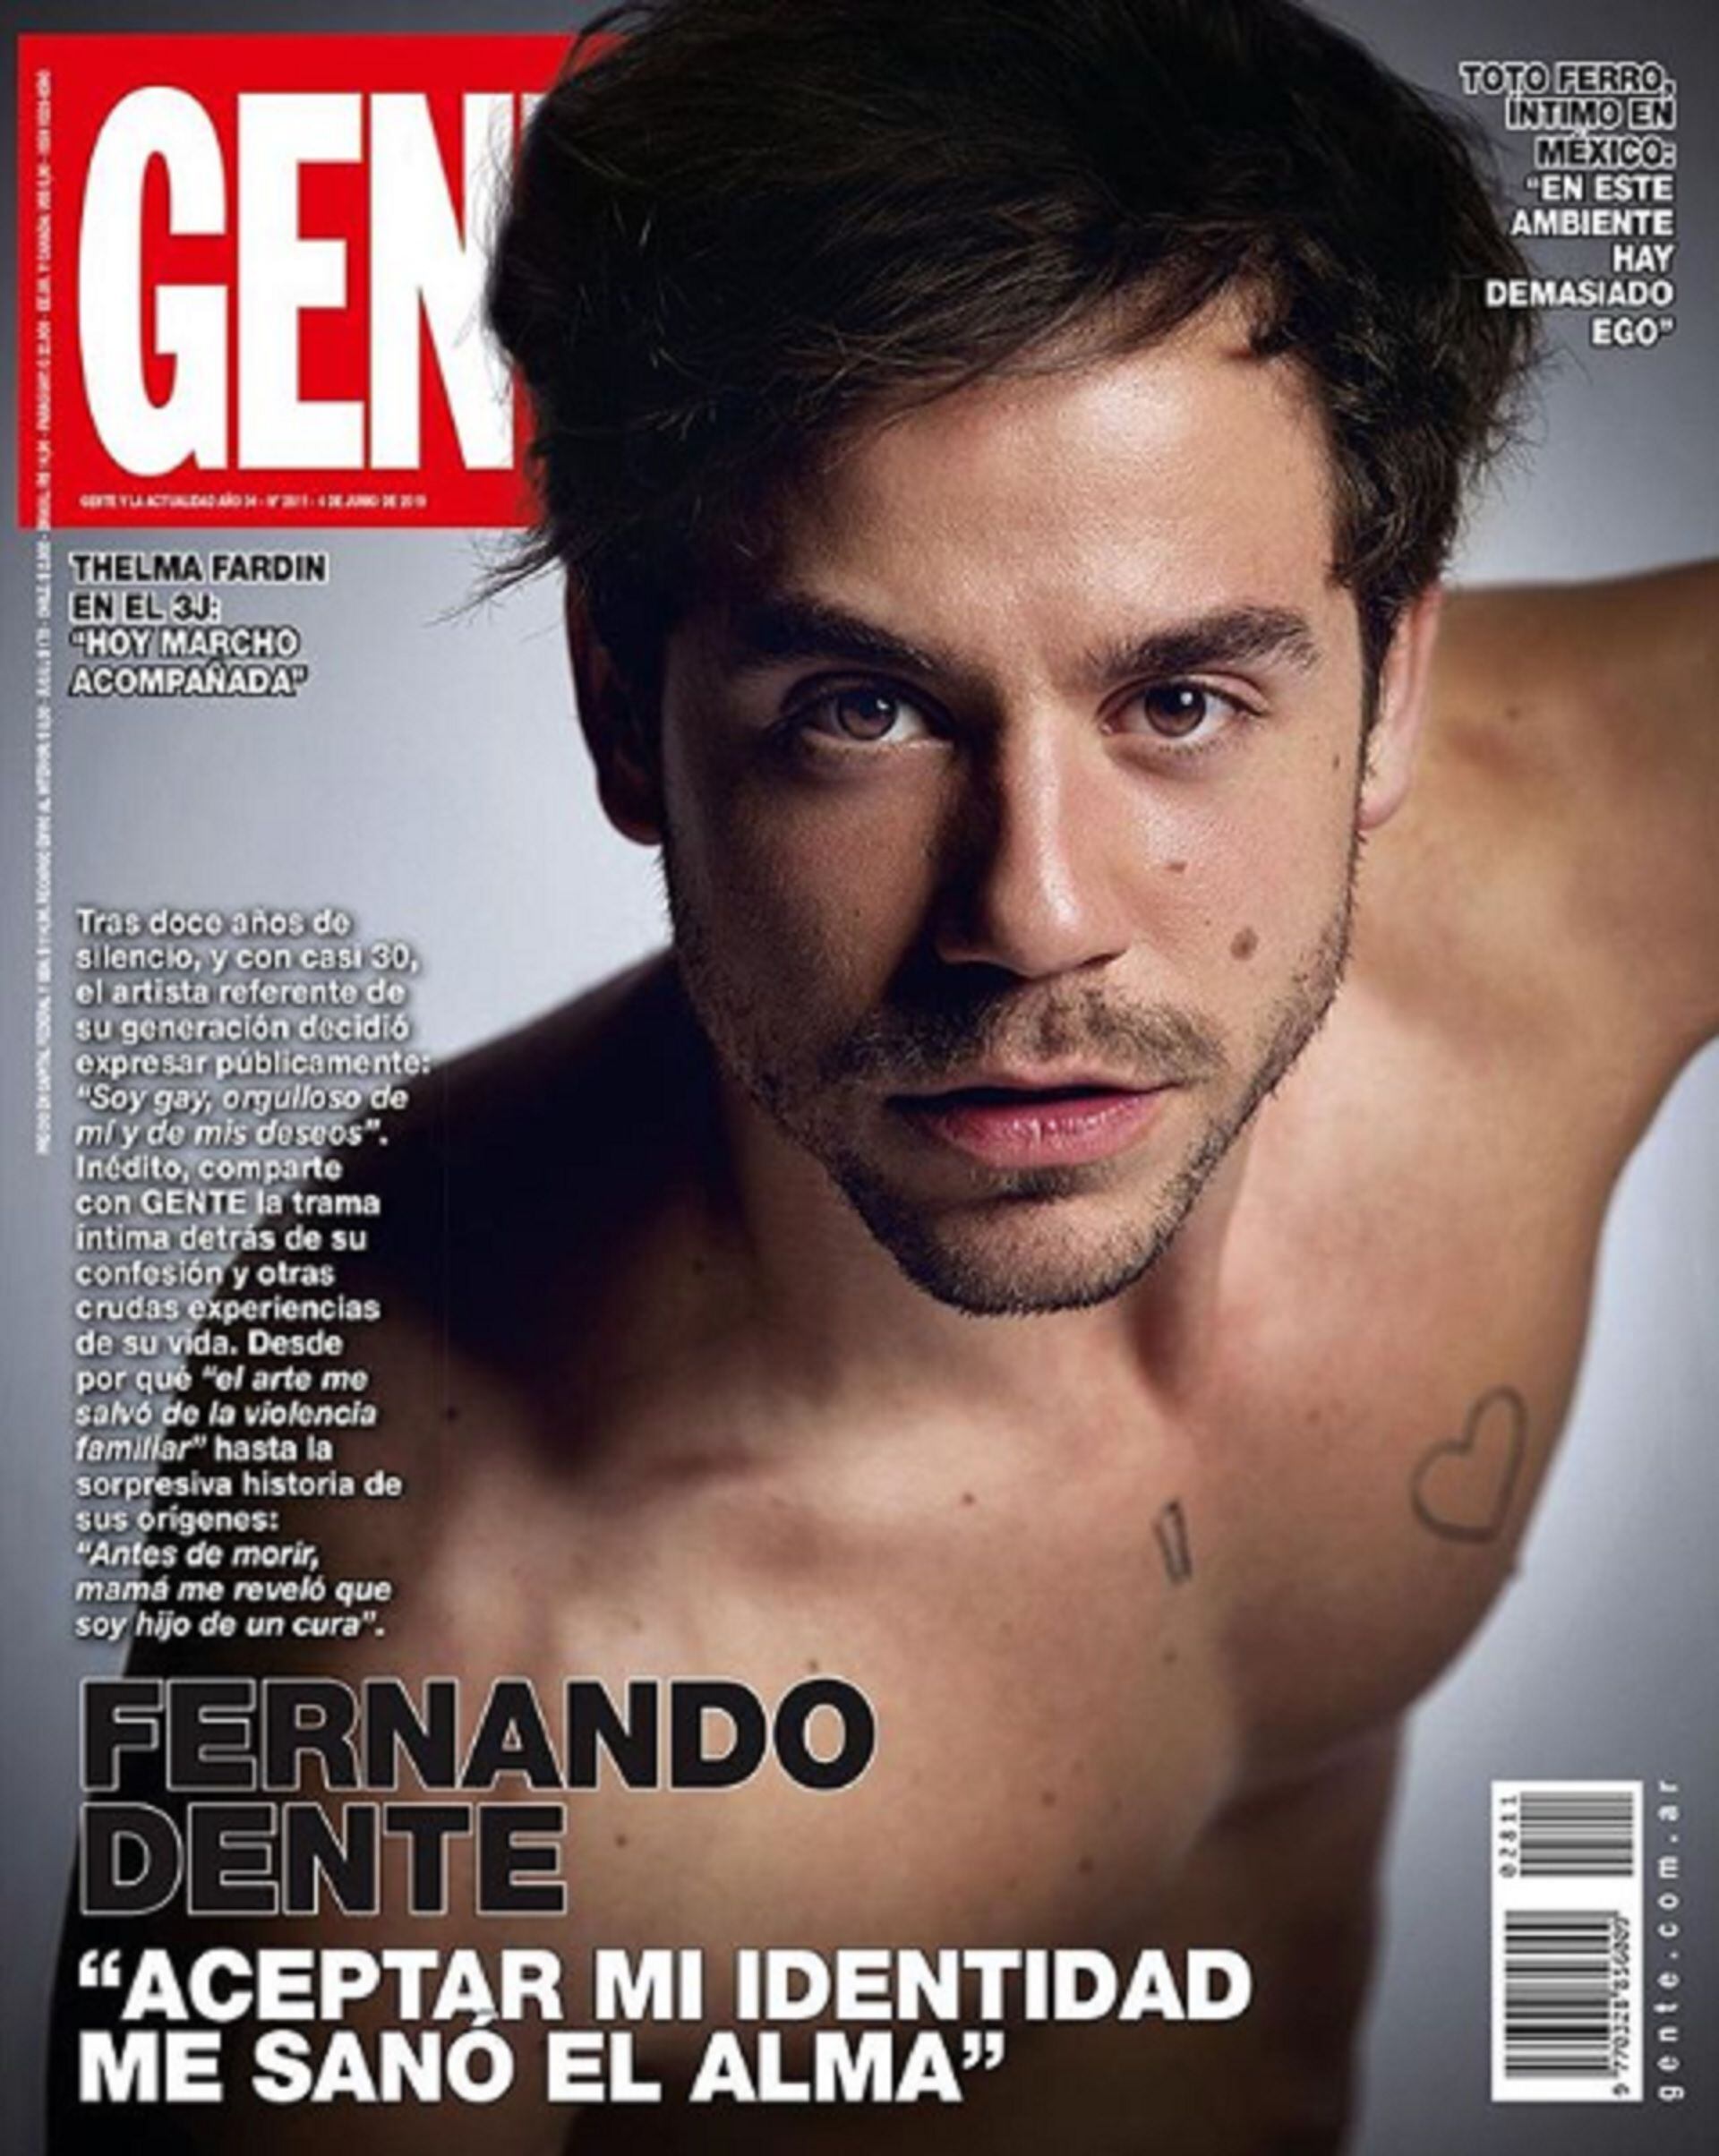 Fernando Dente reveló su historia de vida en una entrevista en la Revista Gente